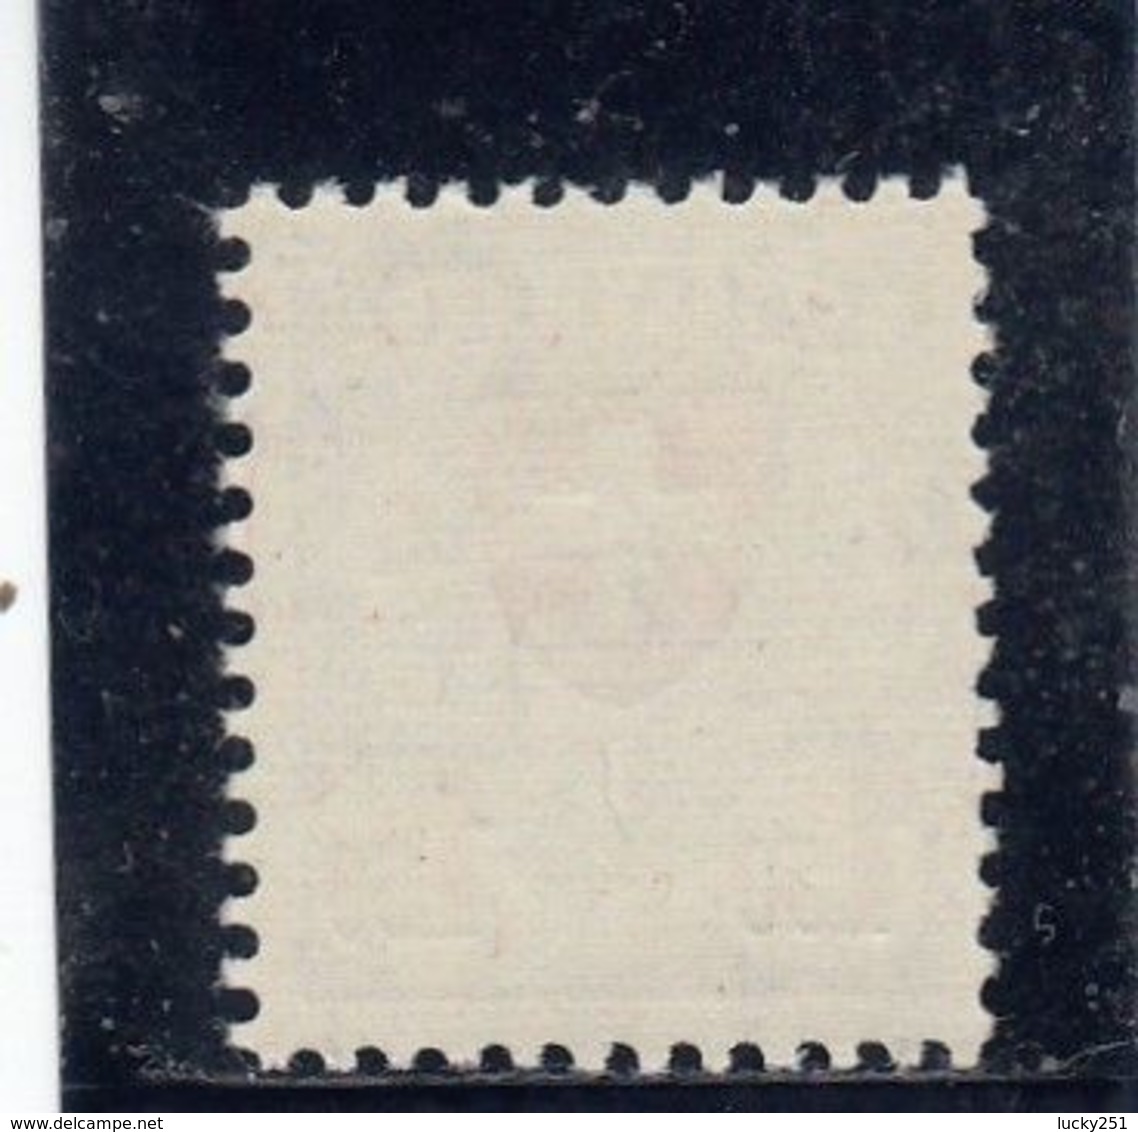 Suisse - Année 1933/34 - Type écusson - N°YT 210a** - Papier Gaufré (grillé) - Unused Stamps